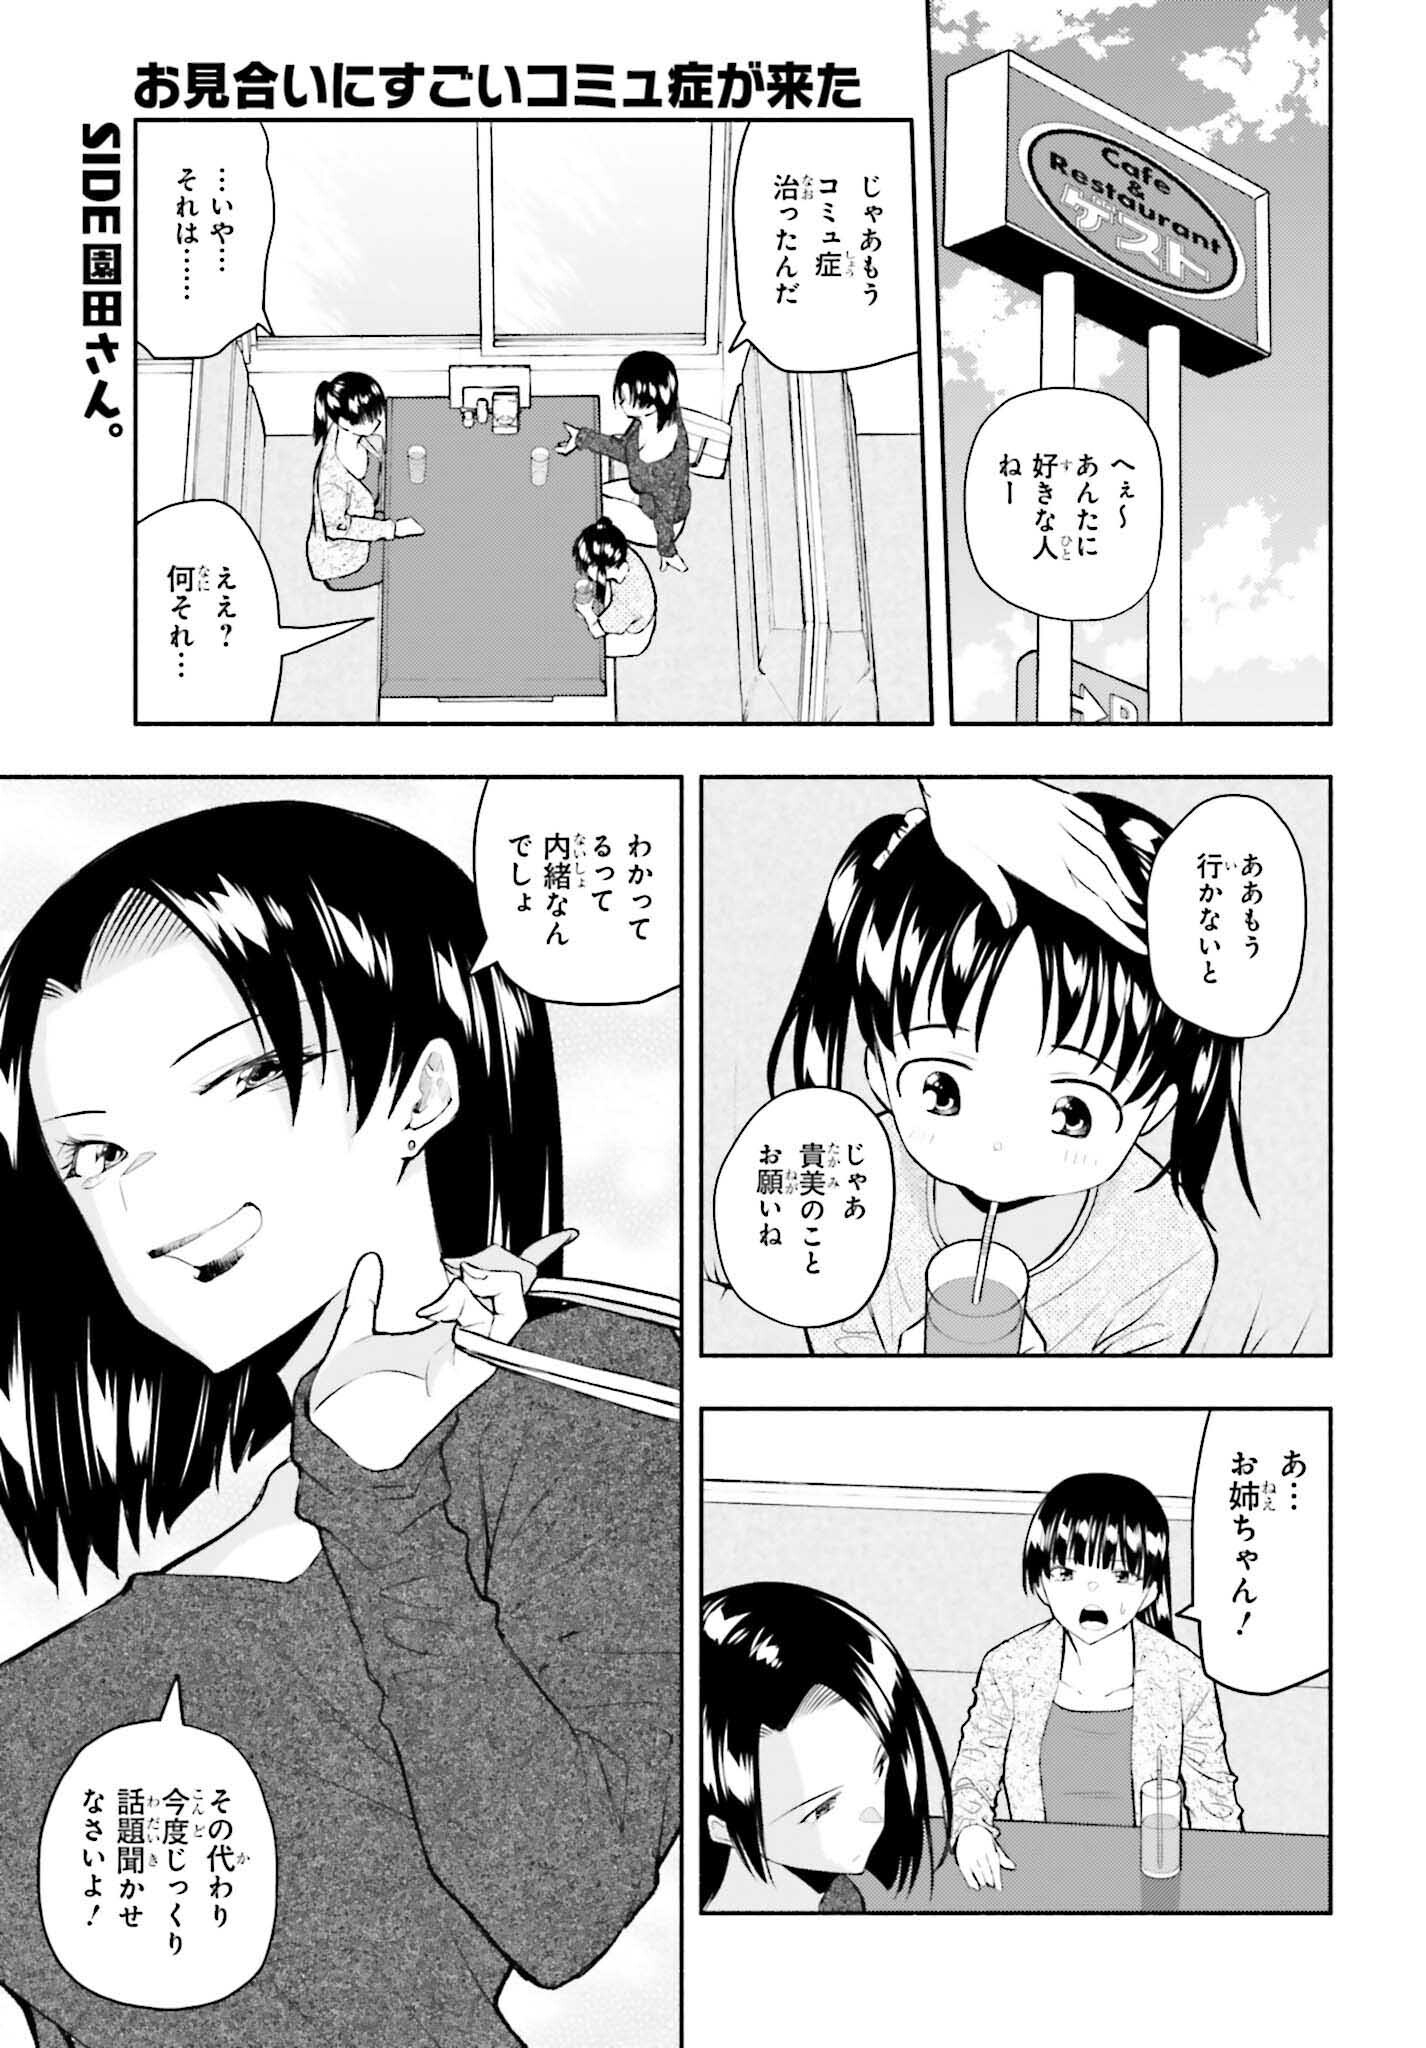 Omiai ni Sugoi Komyushou ga Kita - Chapter 9 - Page 1